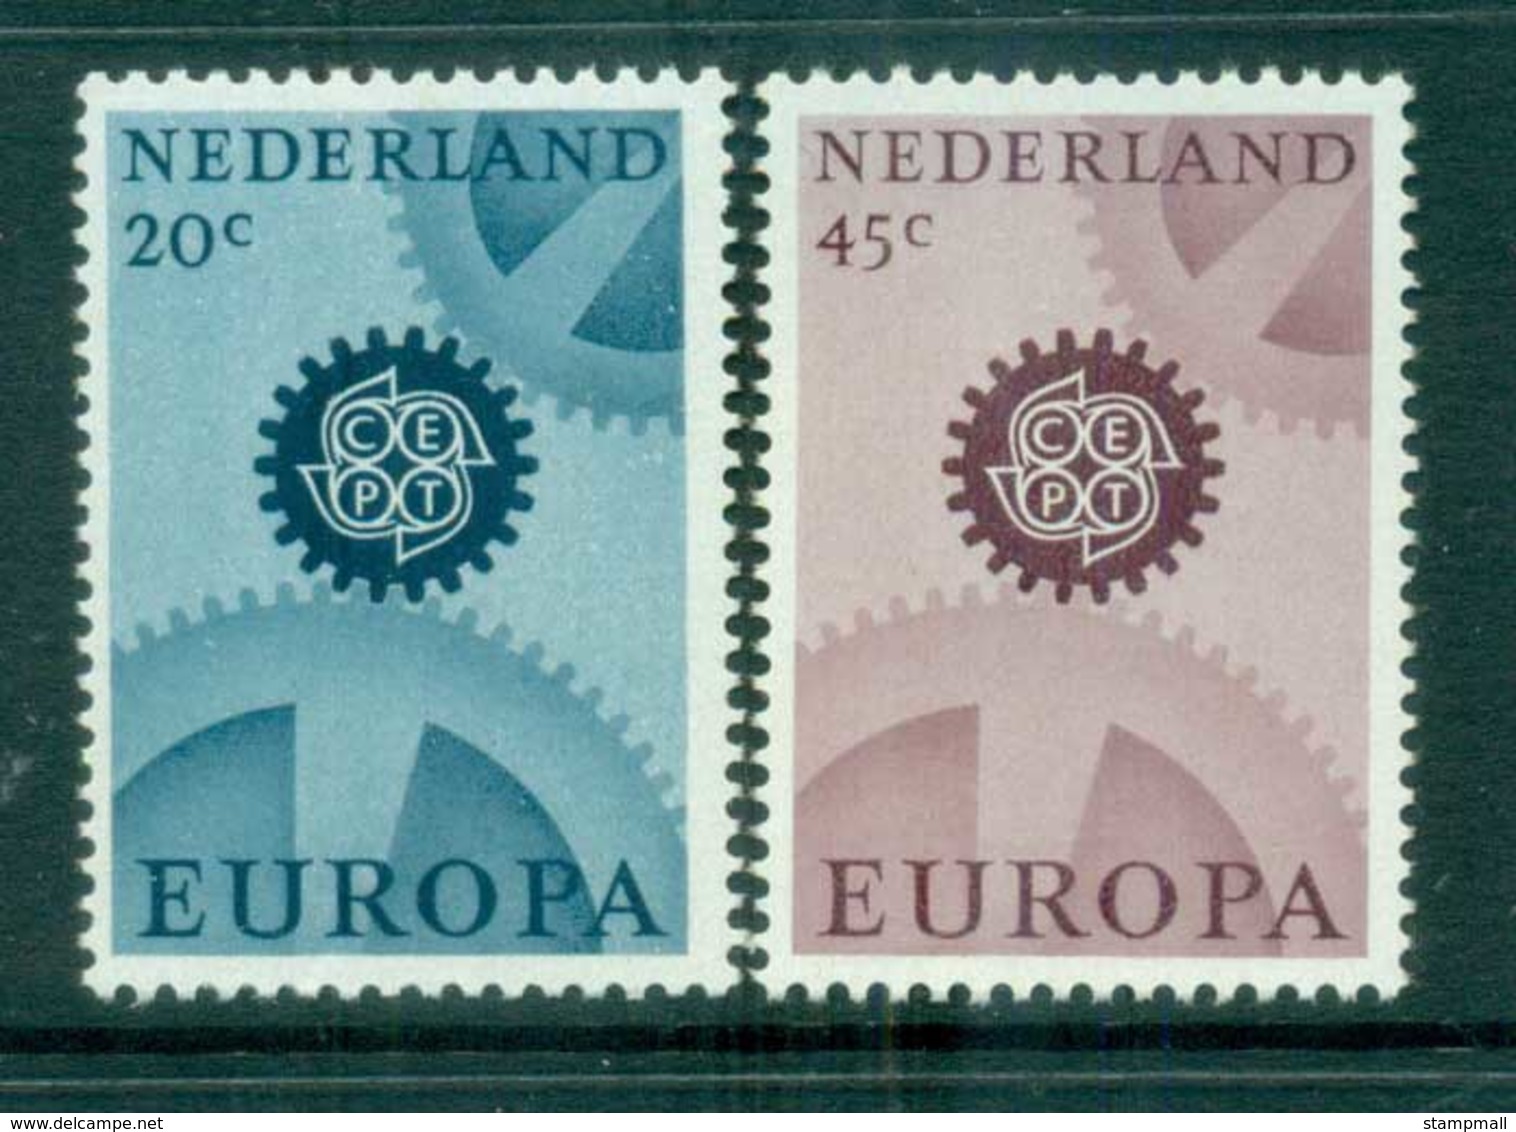 Netherlands 1967 Europa Wmk MUH Lot76695 - Unclassified